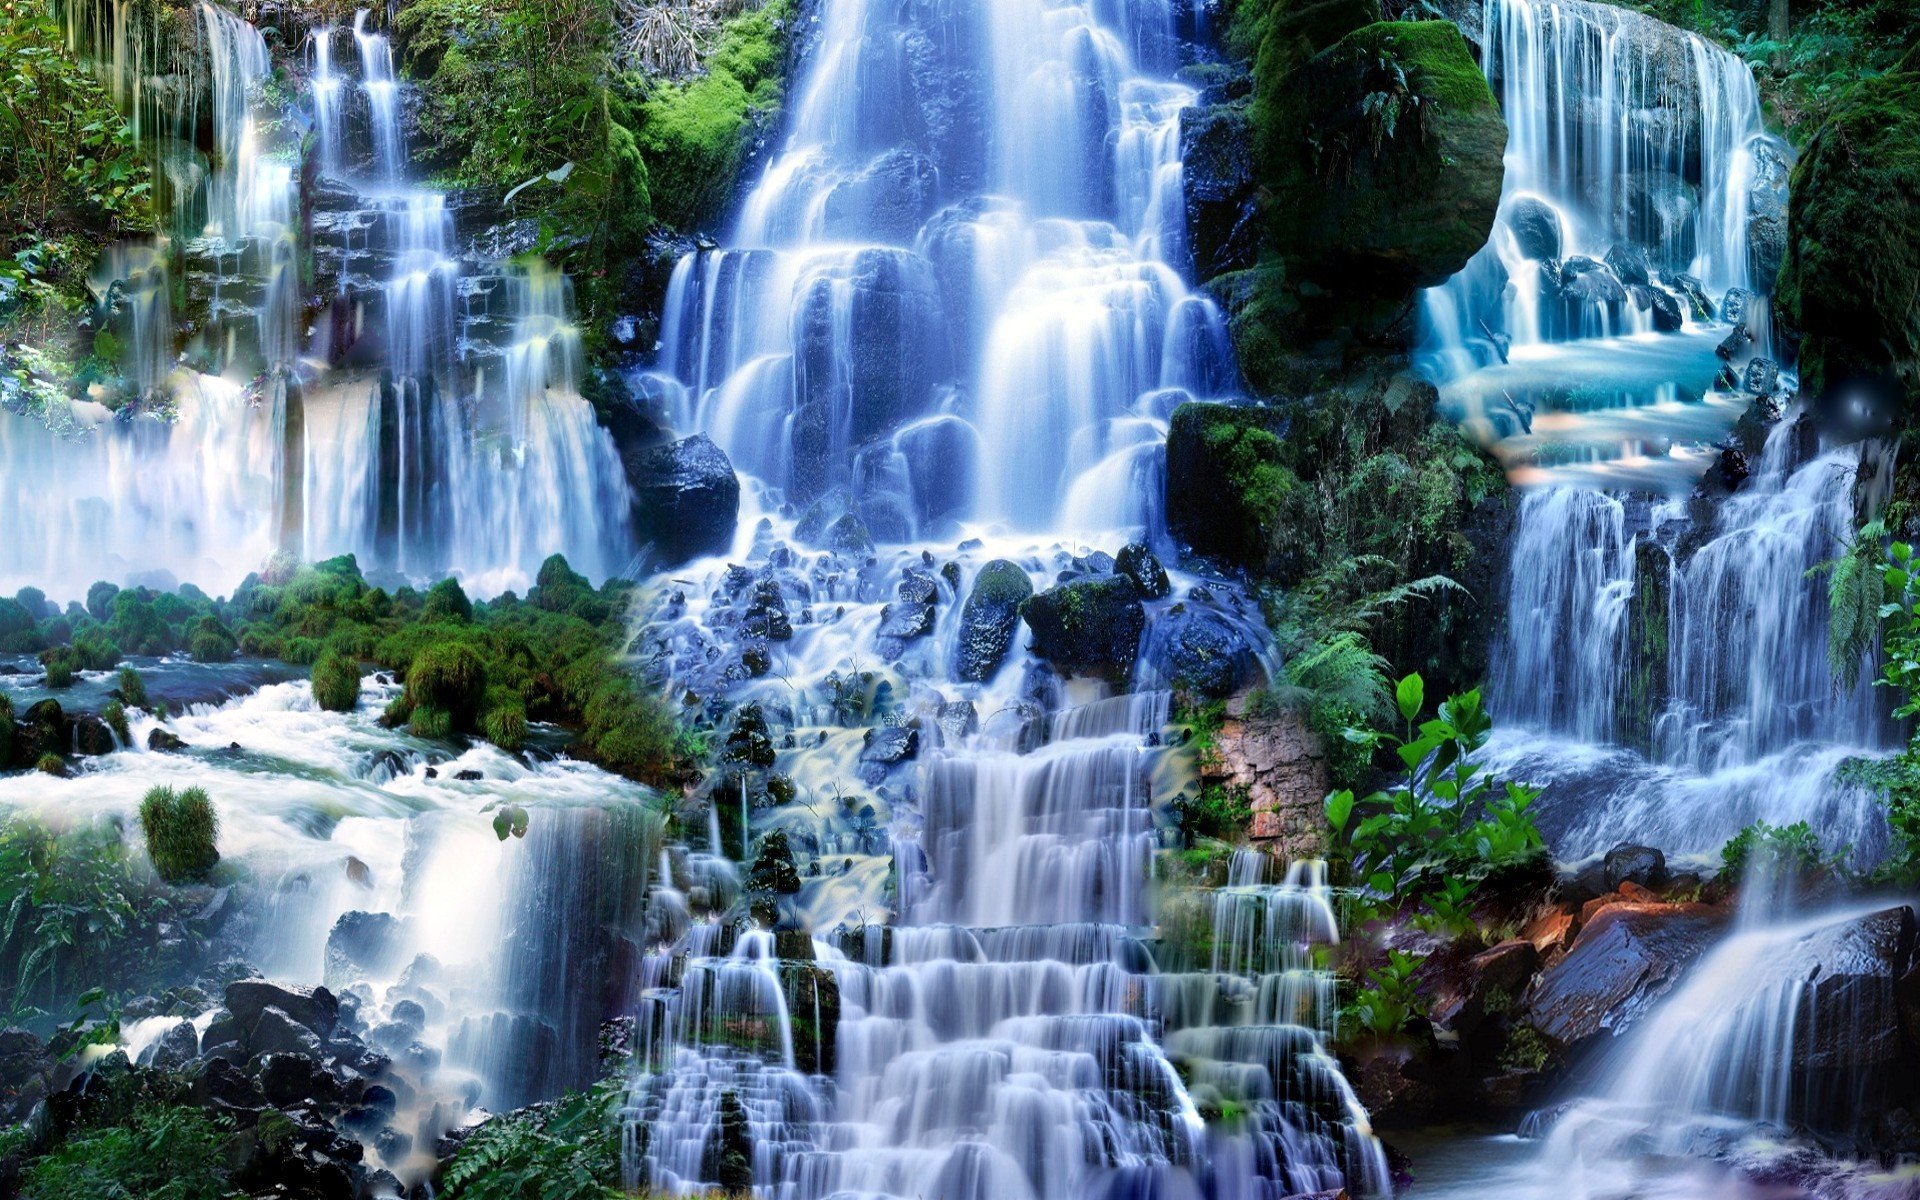 Обои на телефон живой водопад. Водопад Мосбрей. Водопад Сангардак. Фотоколлаж водопады. Живая природа водопады.